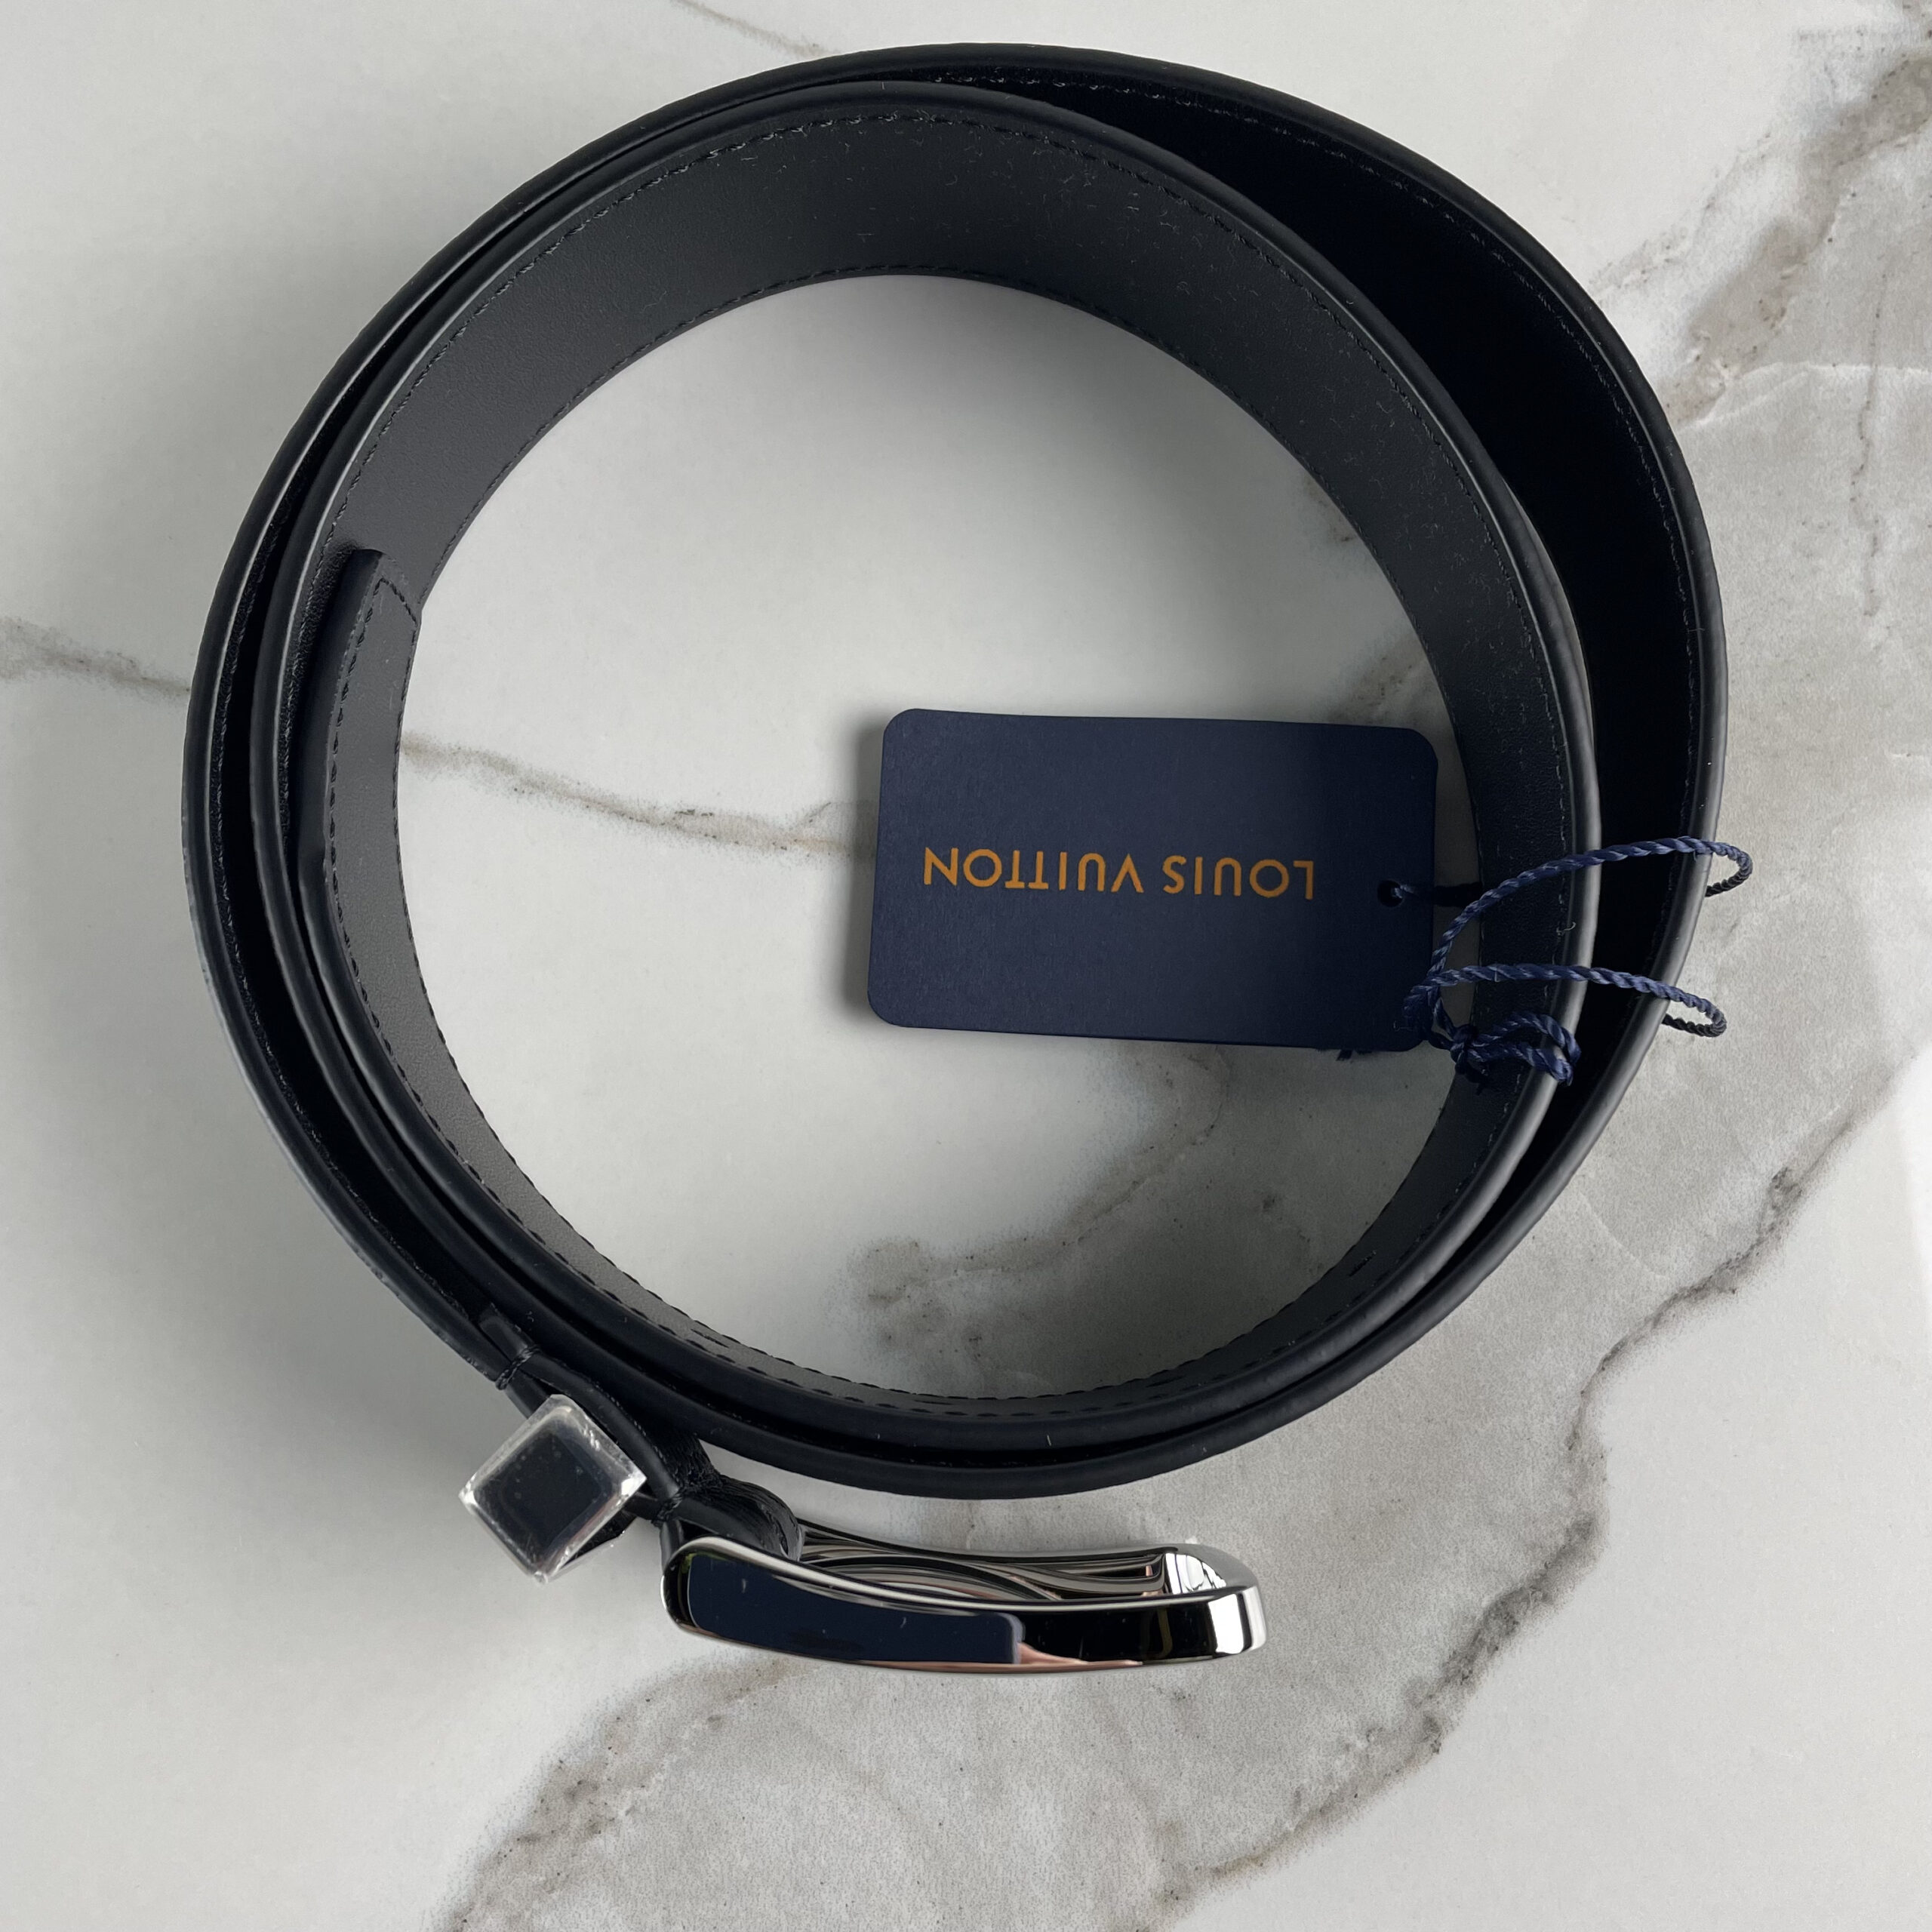 Louis Vuitton Pont Neuf Belt 35m Review/ Unboxing 